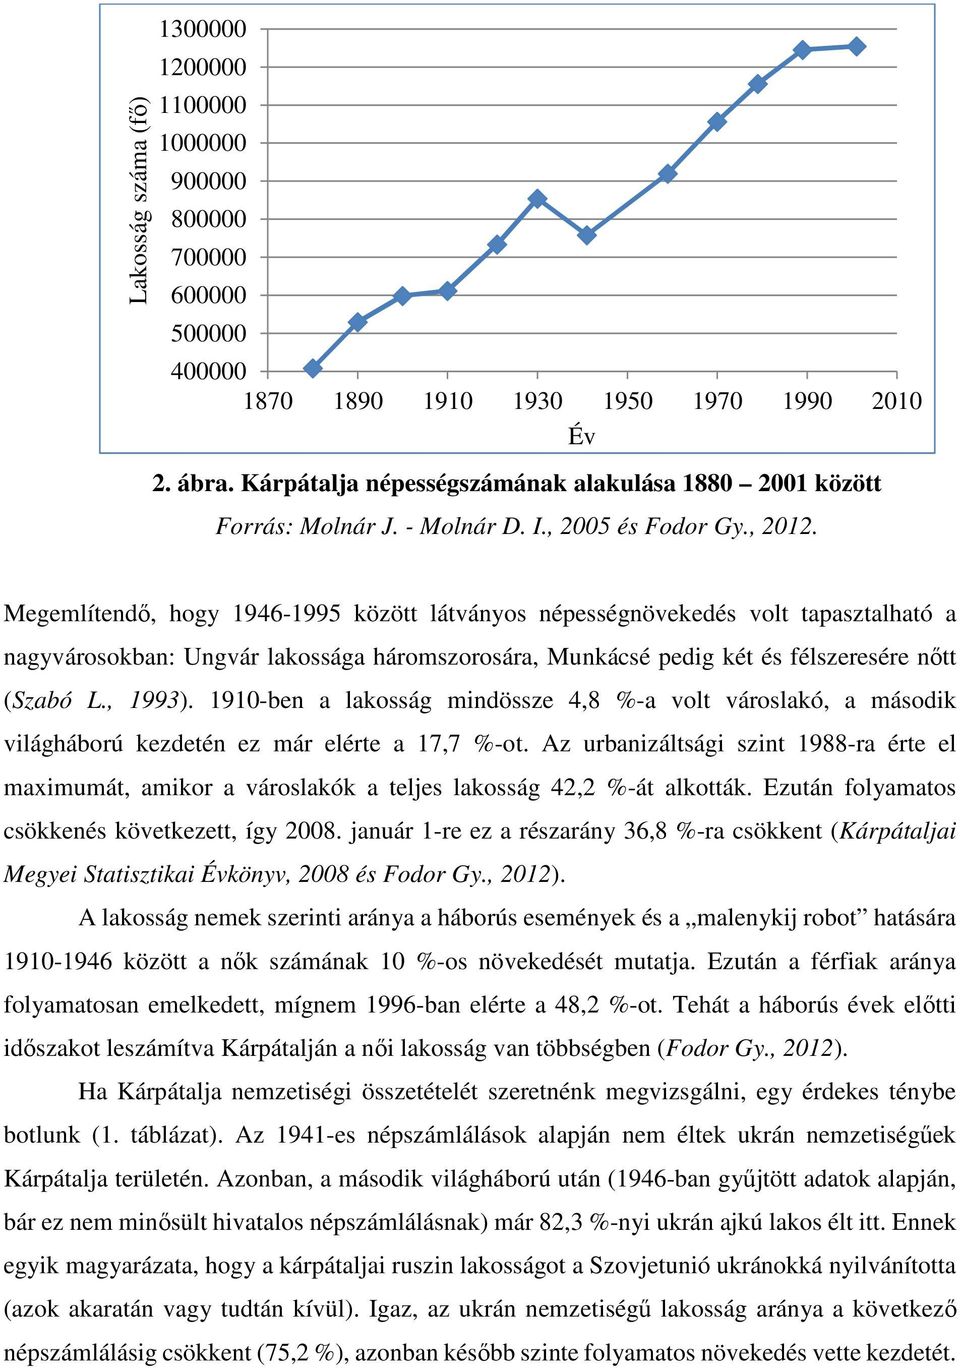 Megemlítendő, hogy 1946-1995 között látványos népességnövekedés volt tapasztalható a nagyvárosokban: Ungvár lakossága háromszorosára, Munkácsé pedig két és félszeresére nőtt (Szabó L., 1993).